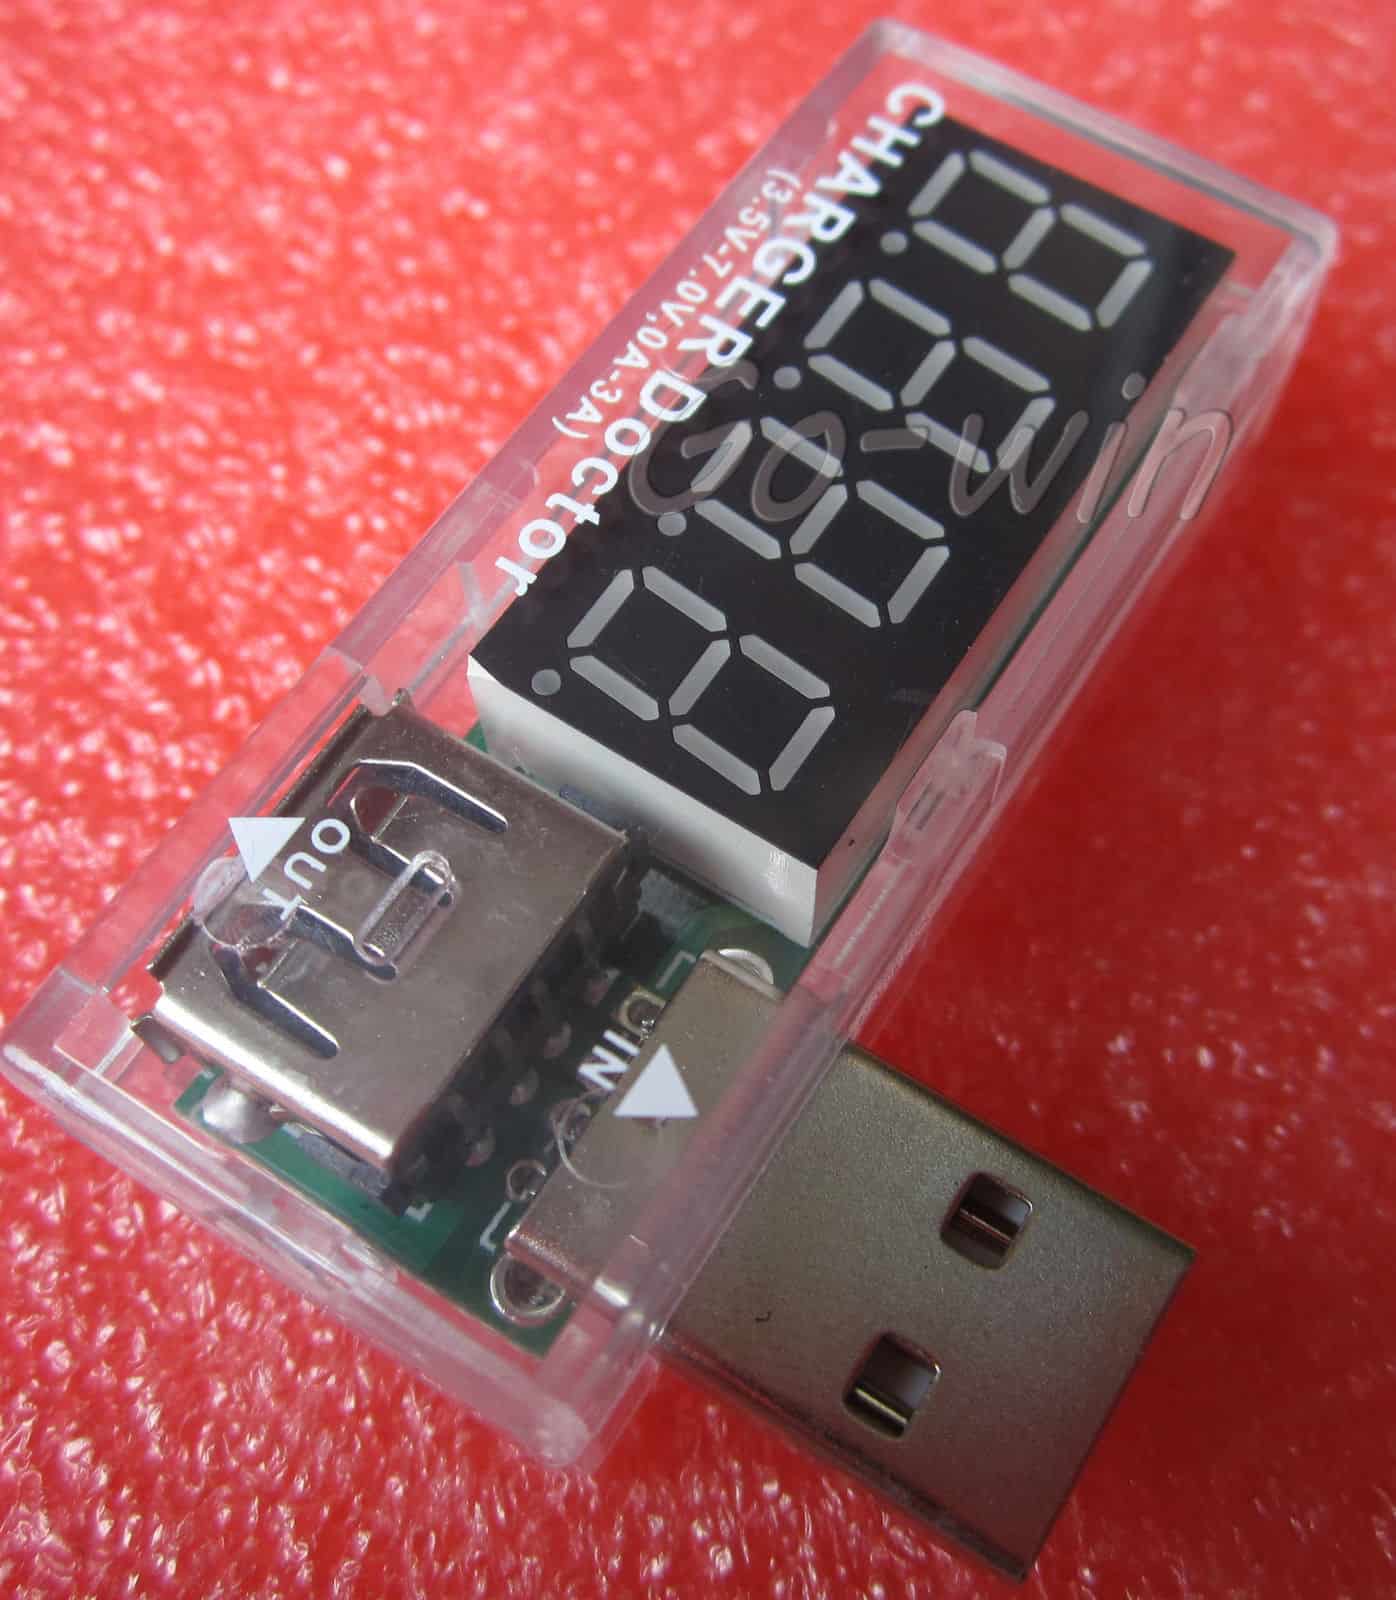 USB Spannungsprüfer (Voltmeter) + Durchgangsstrom-Messer für nur 1,37 Euro (gratis Versand)!